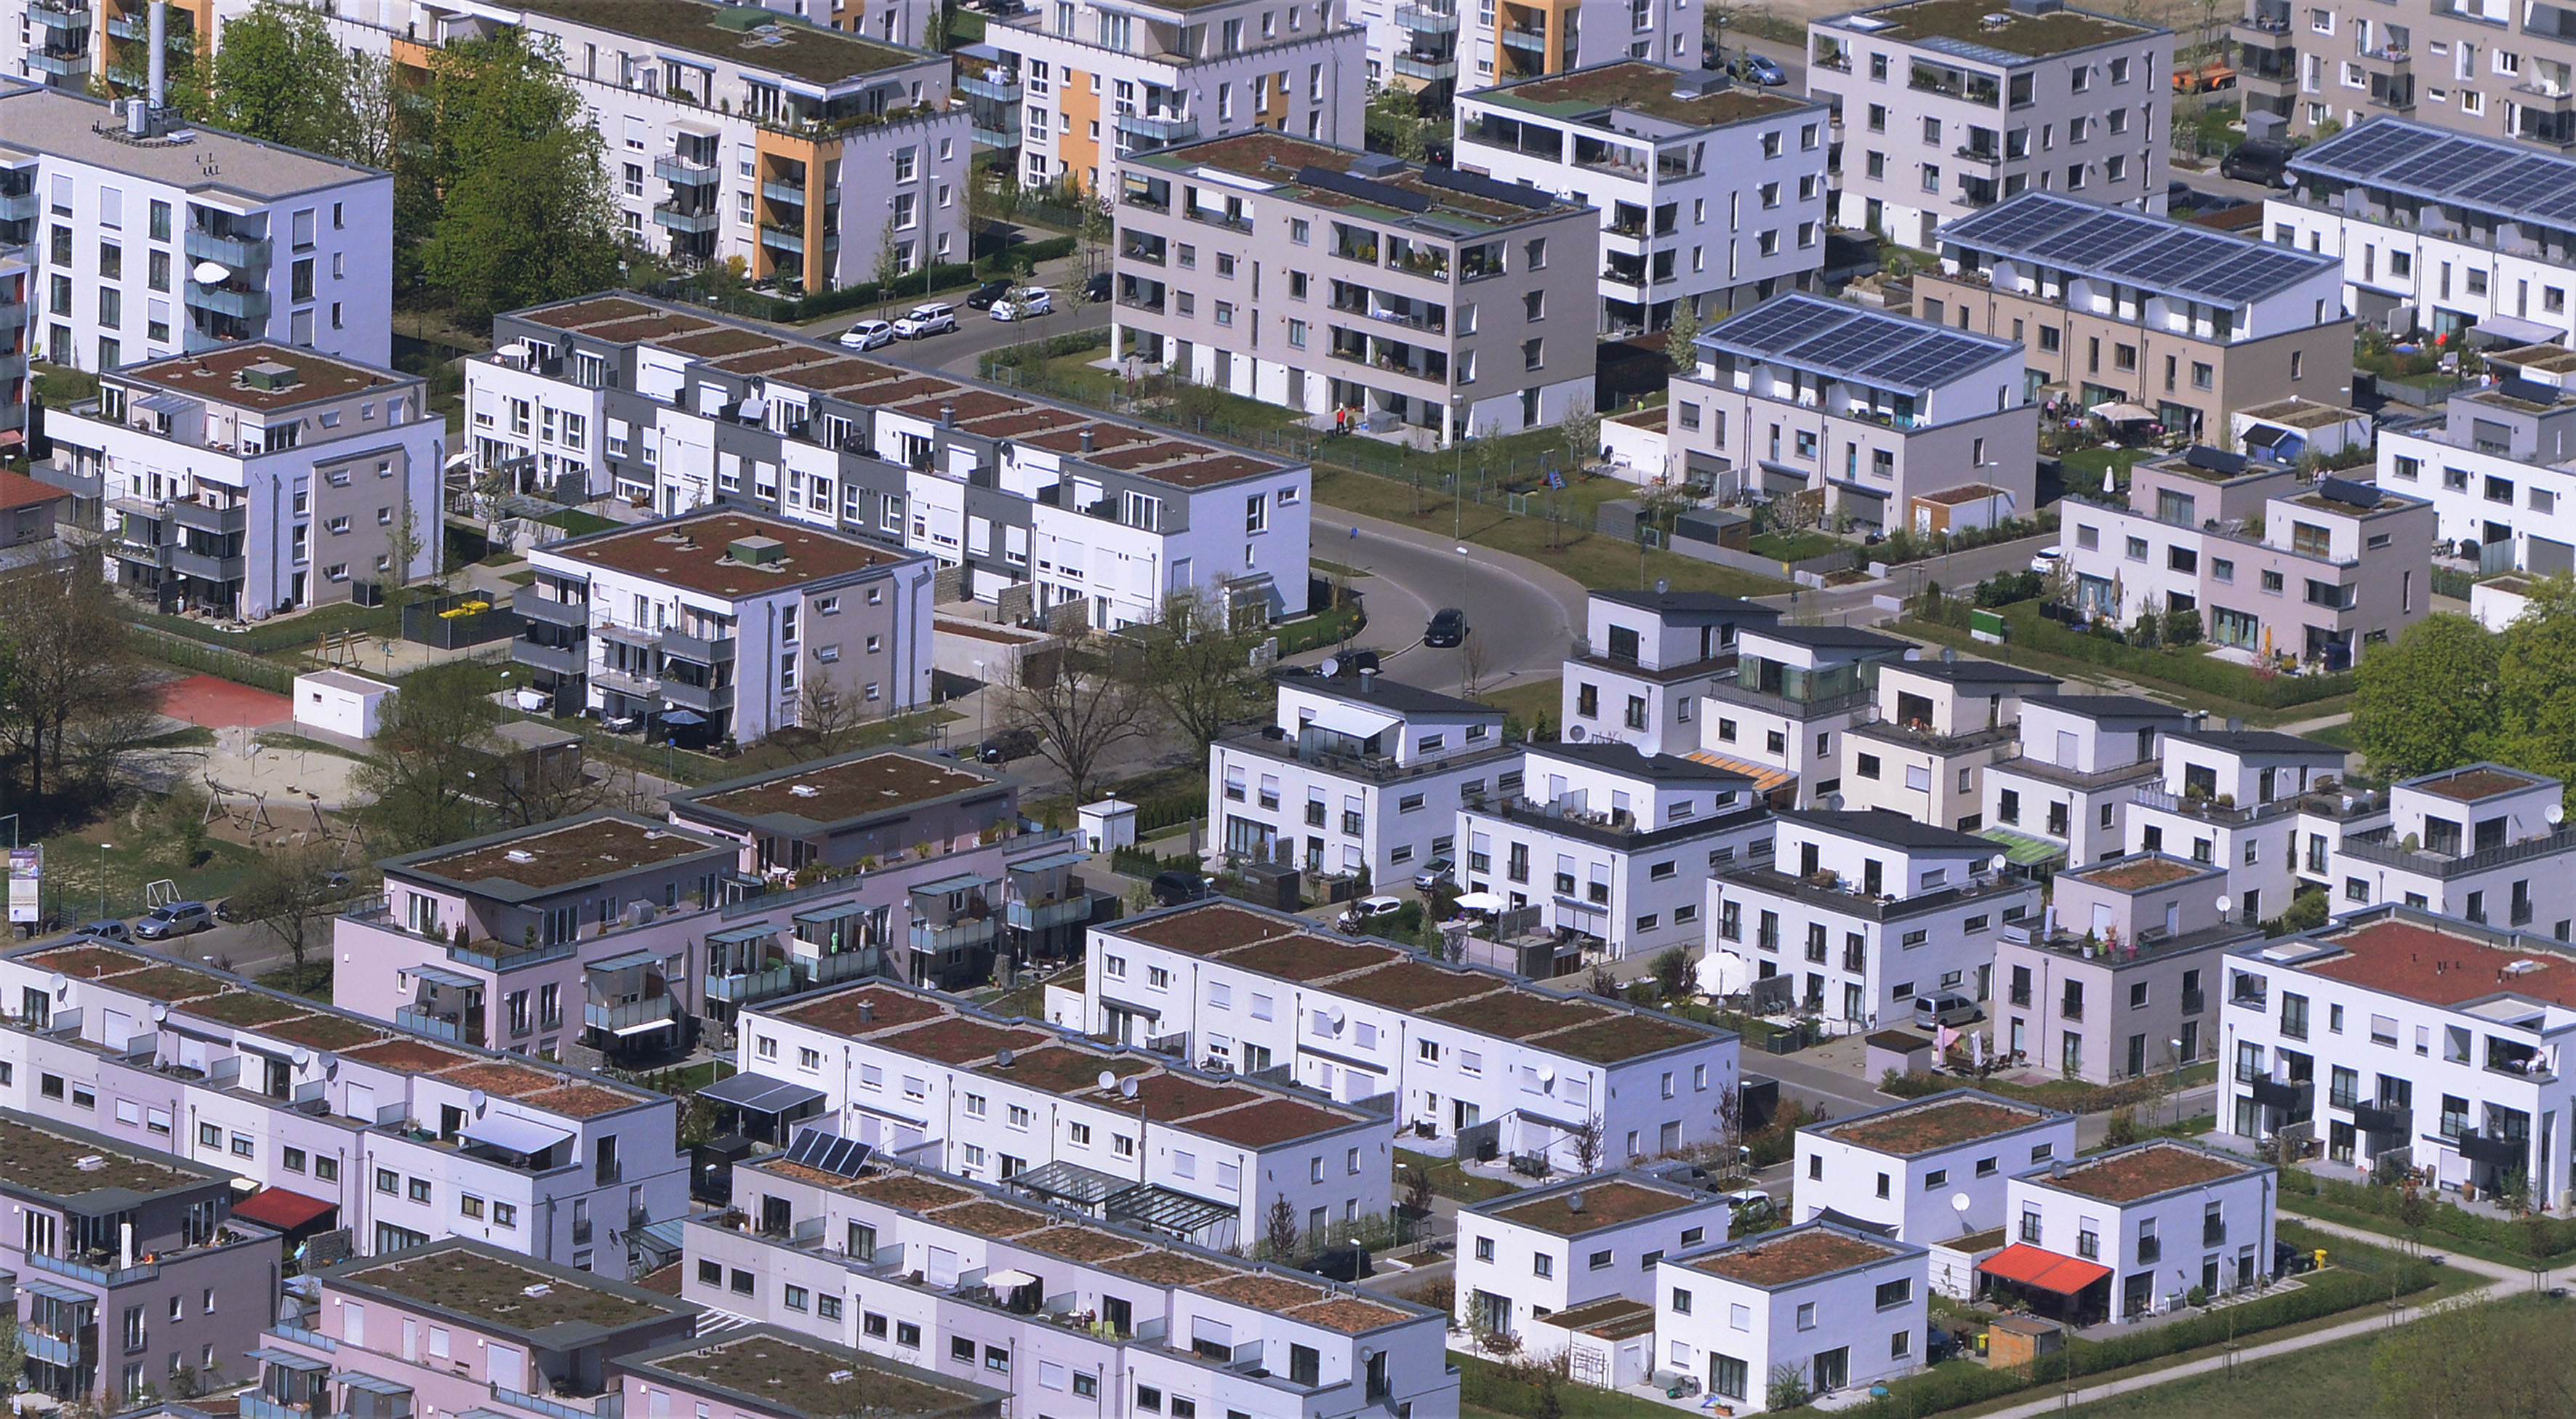 Der Stadtteil Reese-Park mit vielen Mehrfamilienhäusern aus einem Flugzeug fotografiert